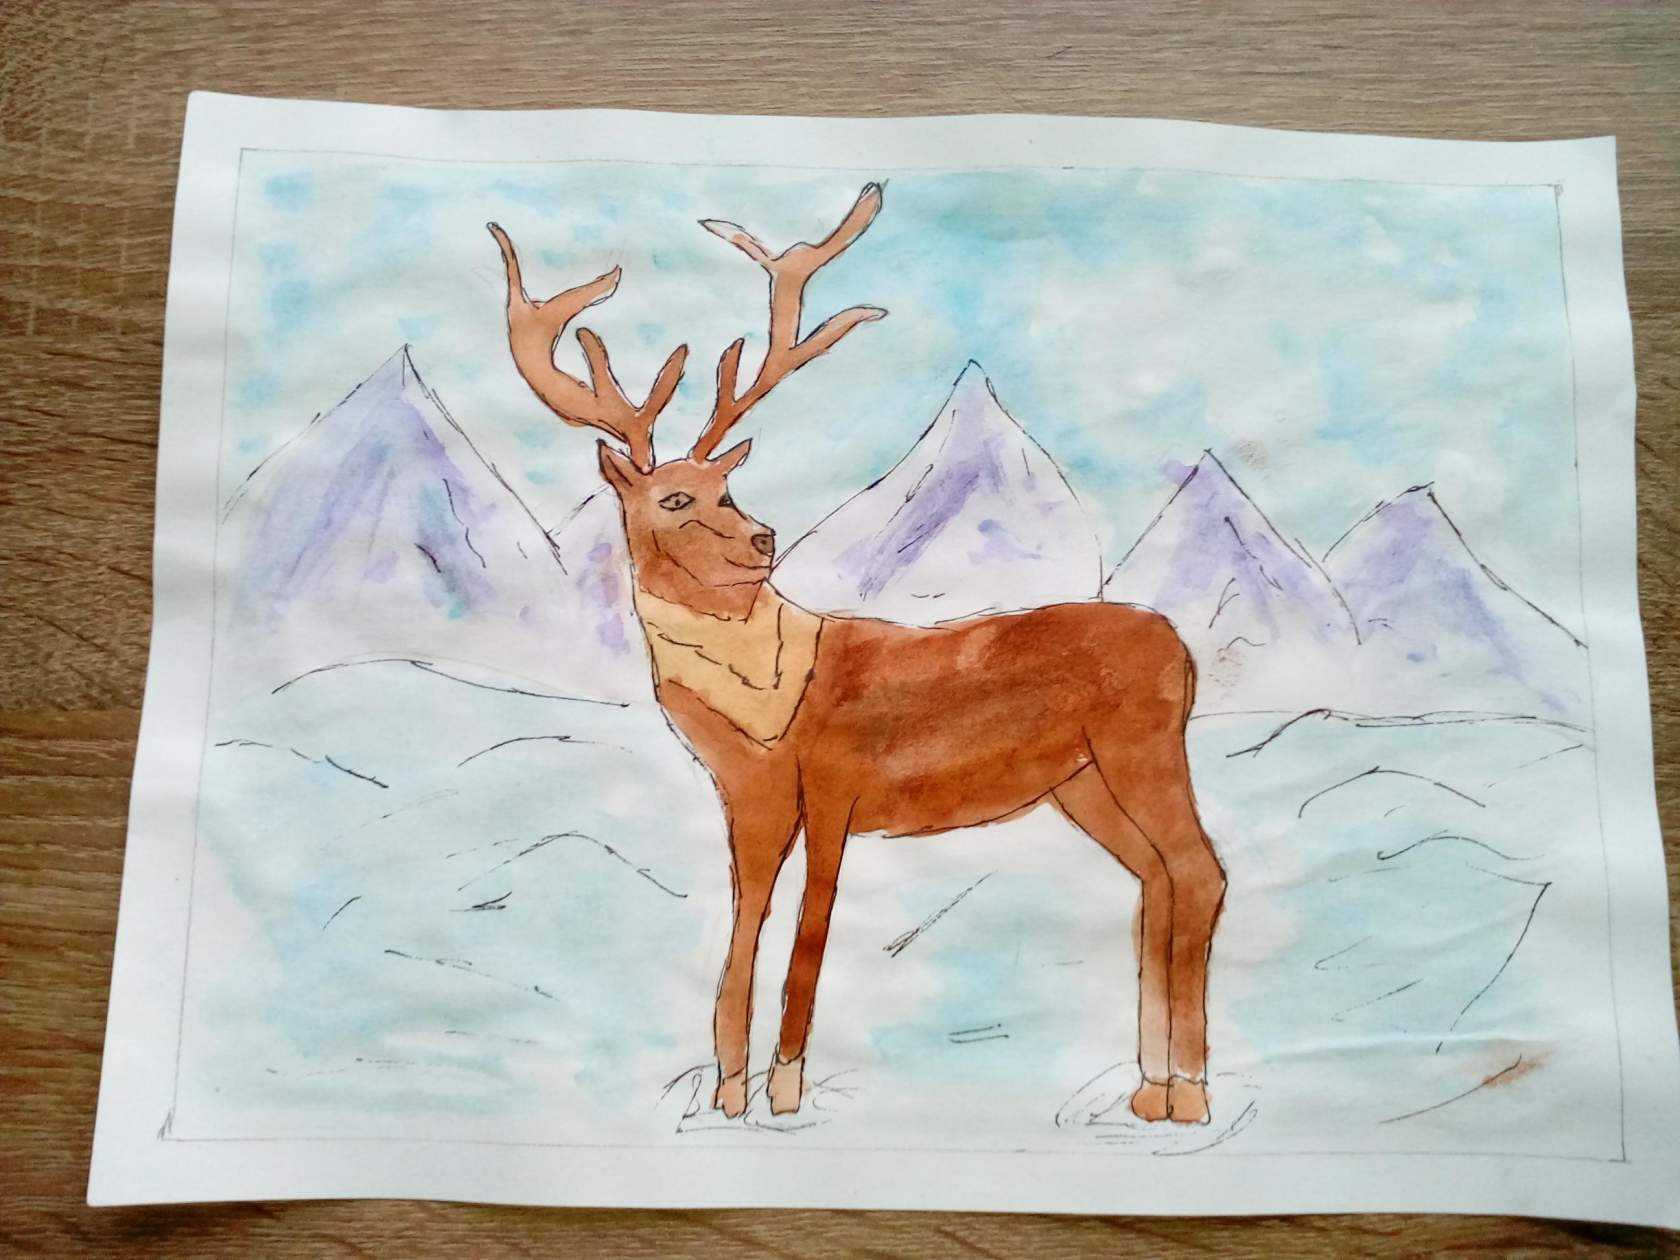 Уроки рисования красками для начинающих: бесплатные видео для домашнего обучения - все курсы онлайн